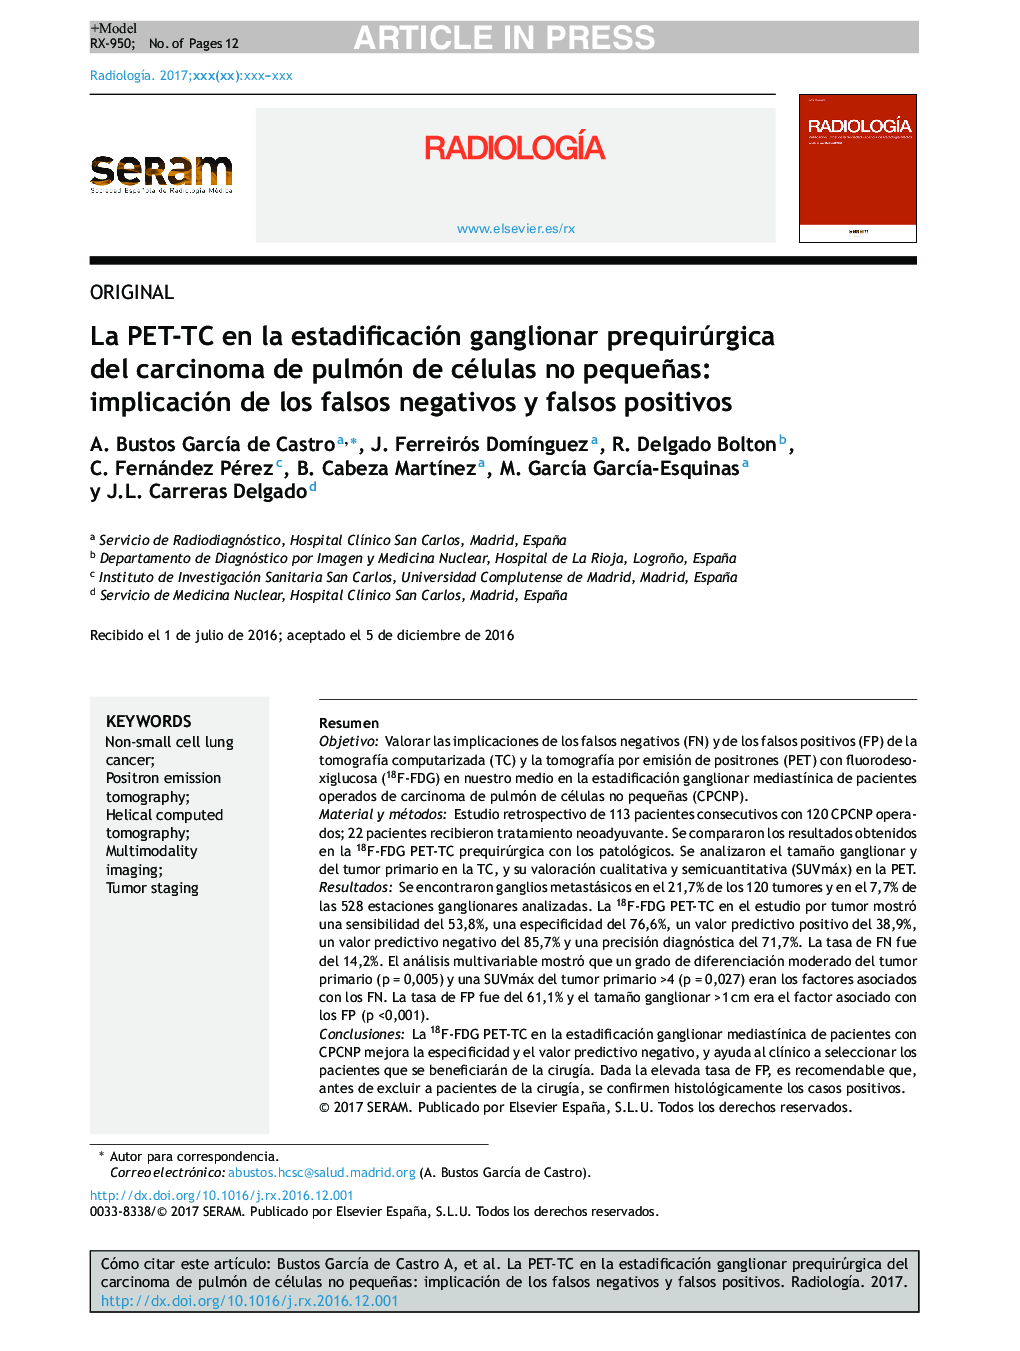 La PET-TC en la estadificación ganglionar prequirúrgica del carcinoma de pulmón de células no pequeñas: implicación de los falsos negativos y falsos positivos